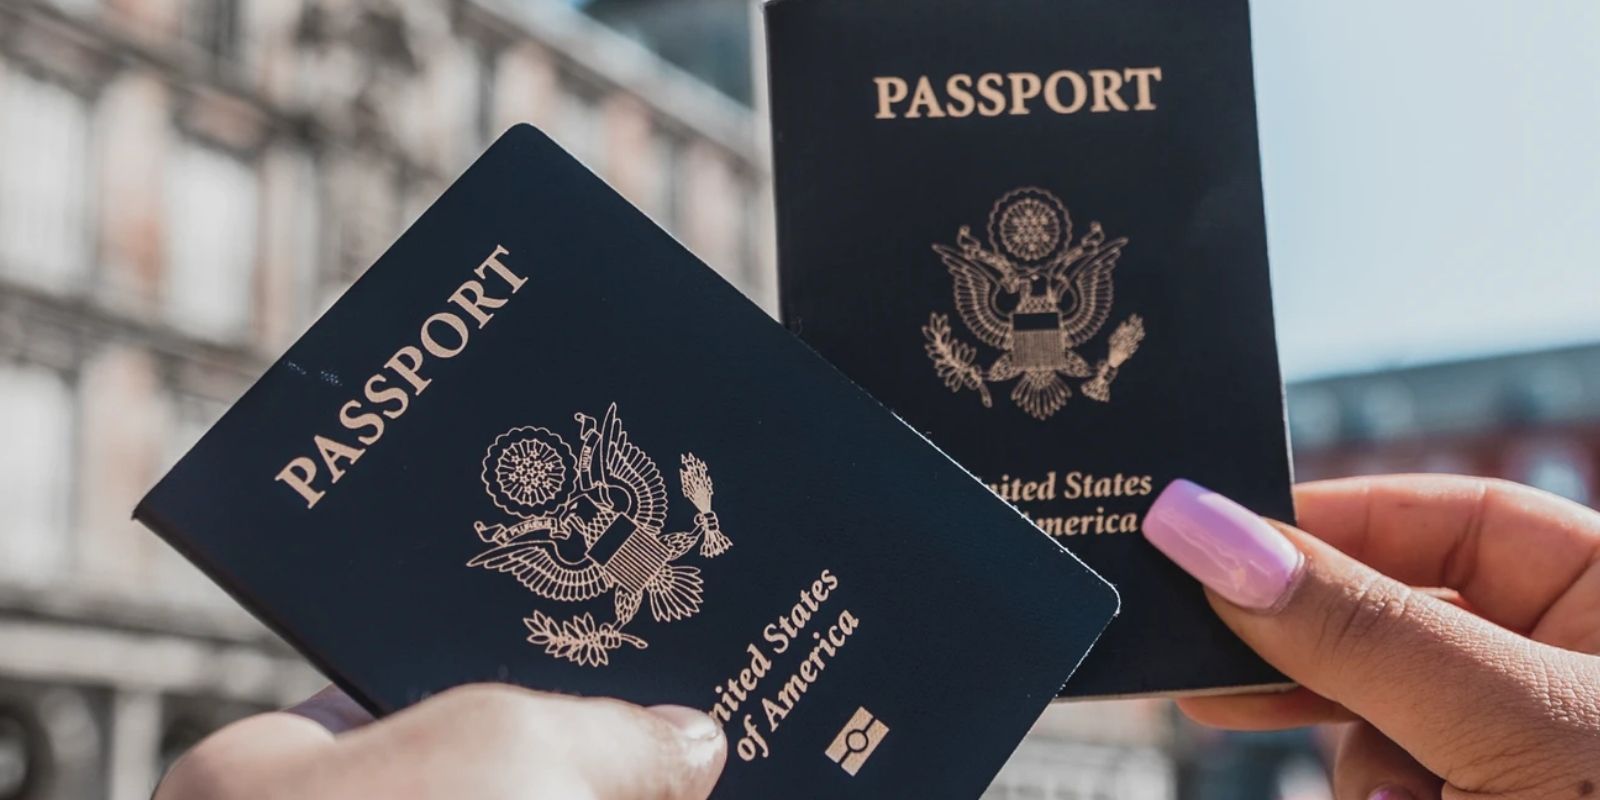 How Do I Get Digital Passport Photos In The USA?